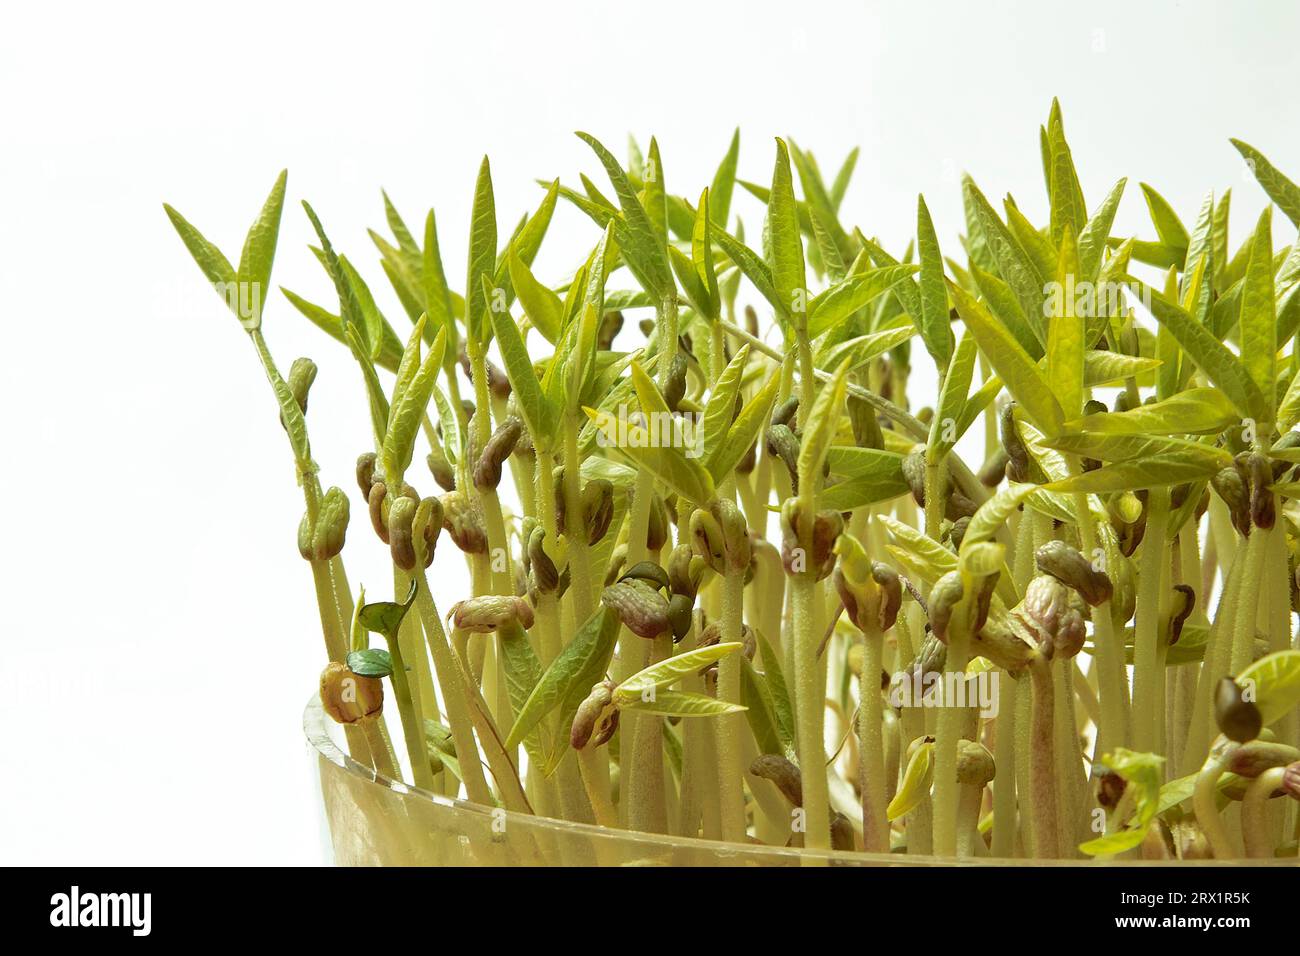 Mung bean seedlings Stock Photo